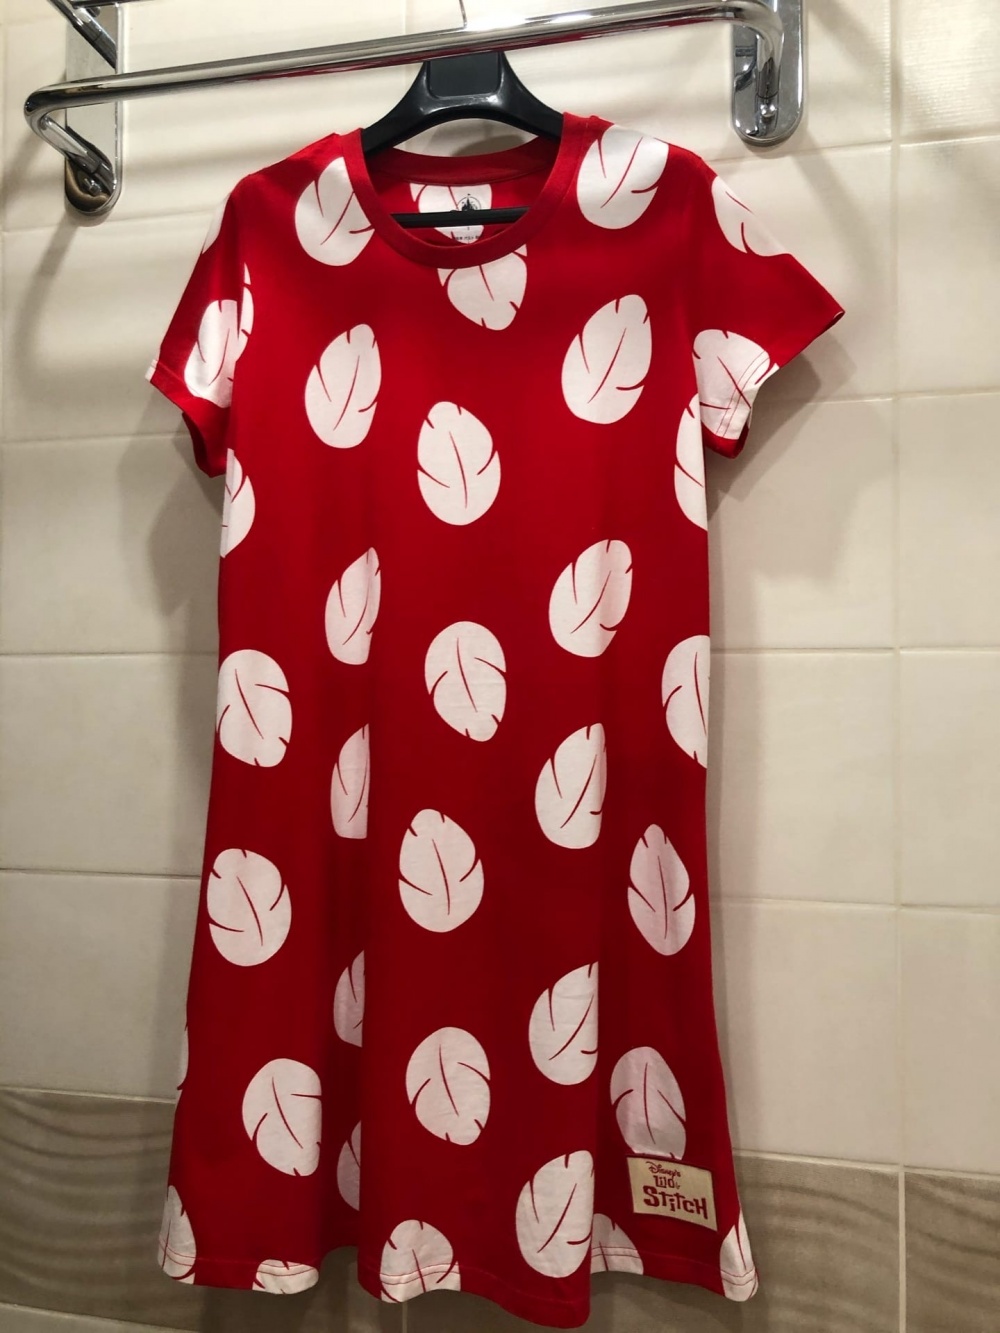 Платье футболка Disney Лило и Стич.Размер S-M.